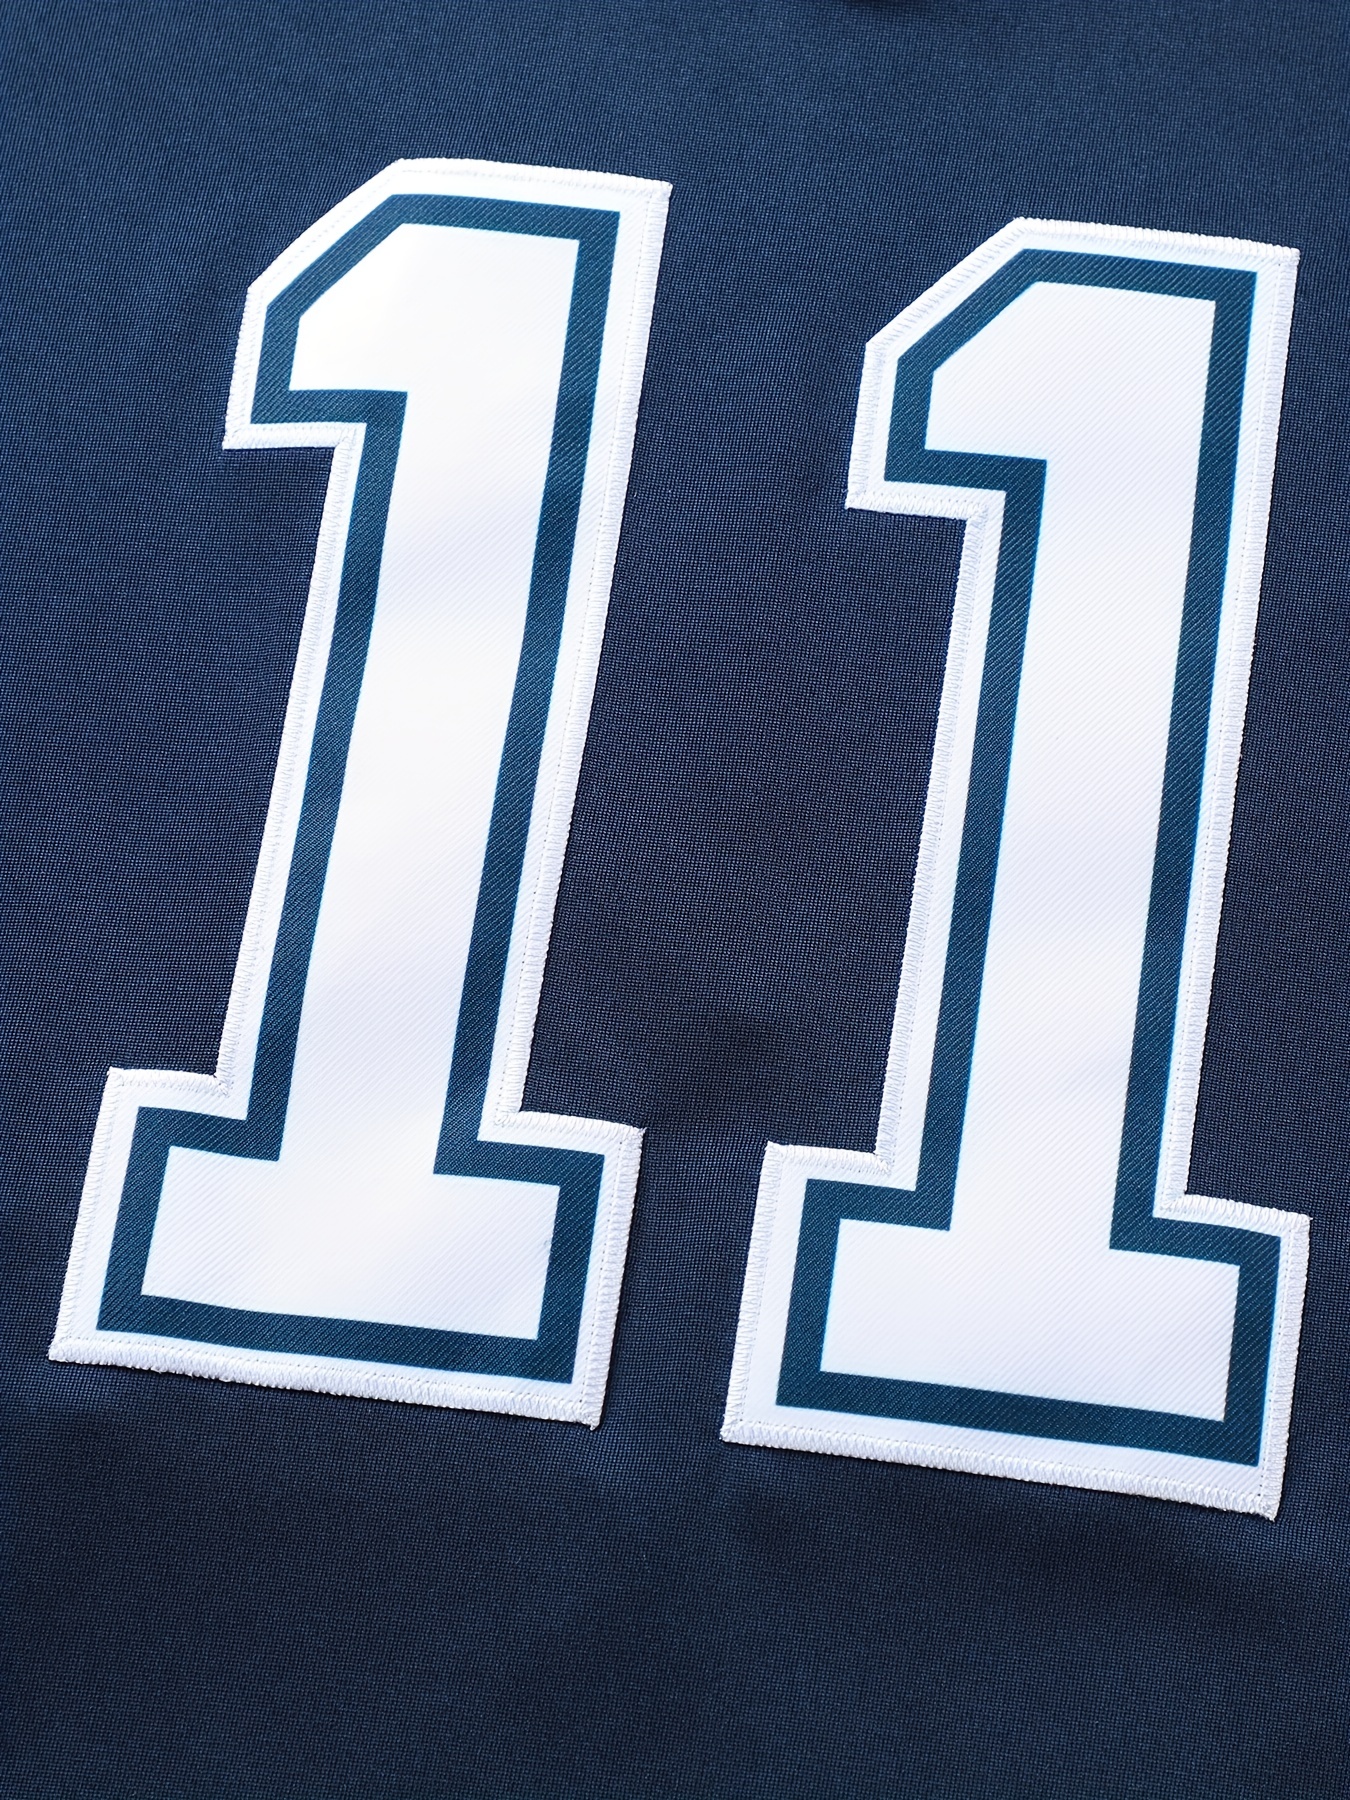 11 sports jersey football number' Men's T-Shirt